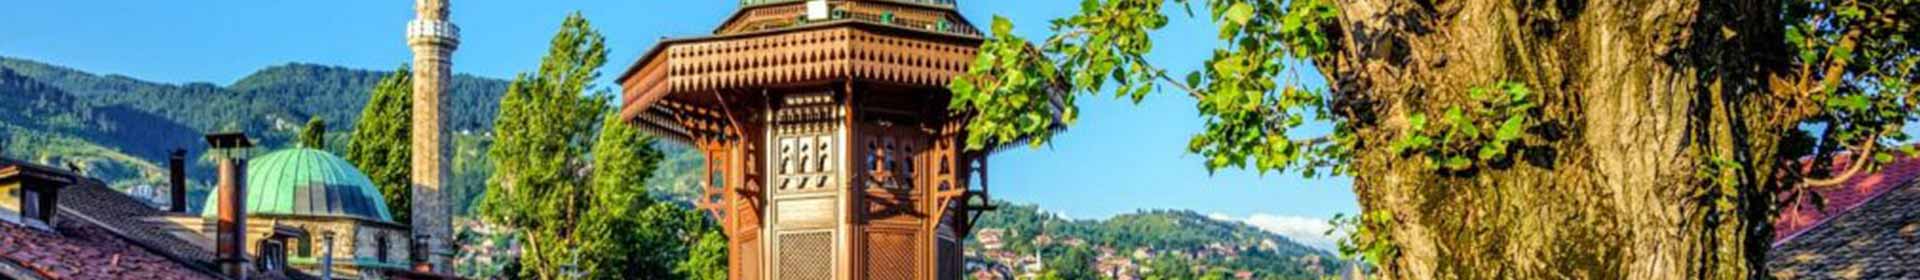 Mostar & Sarajevo tour